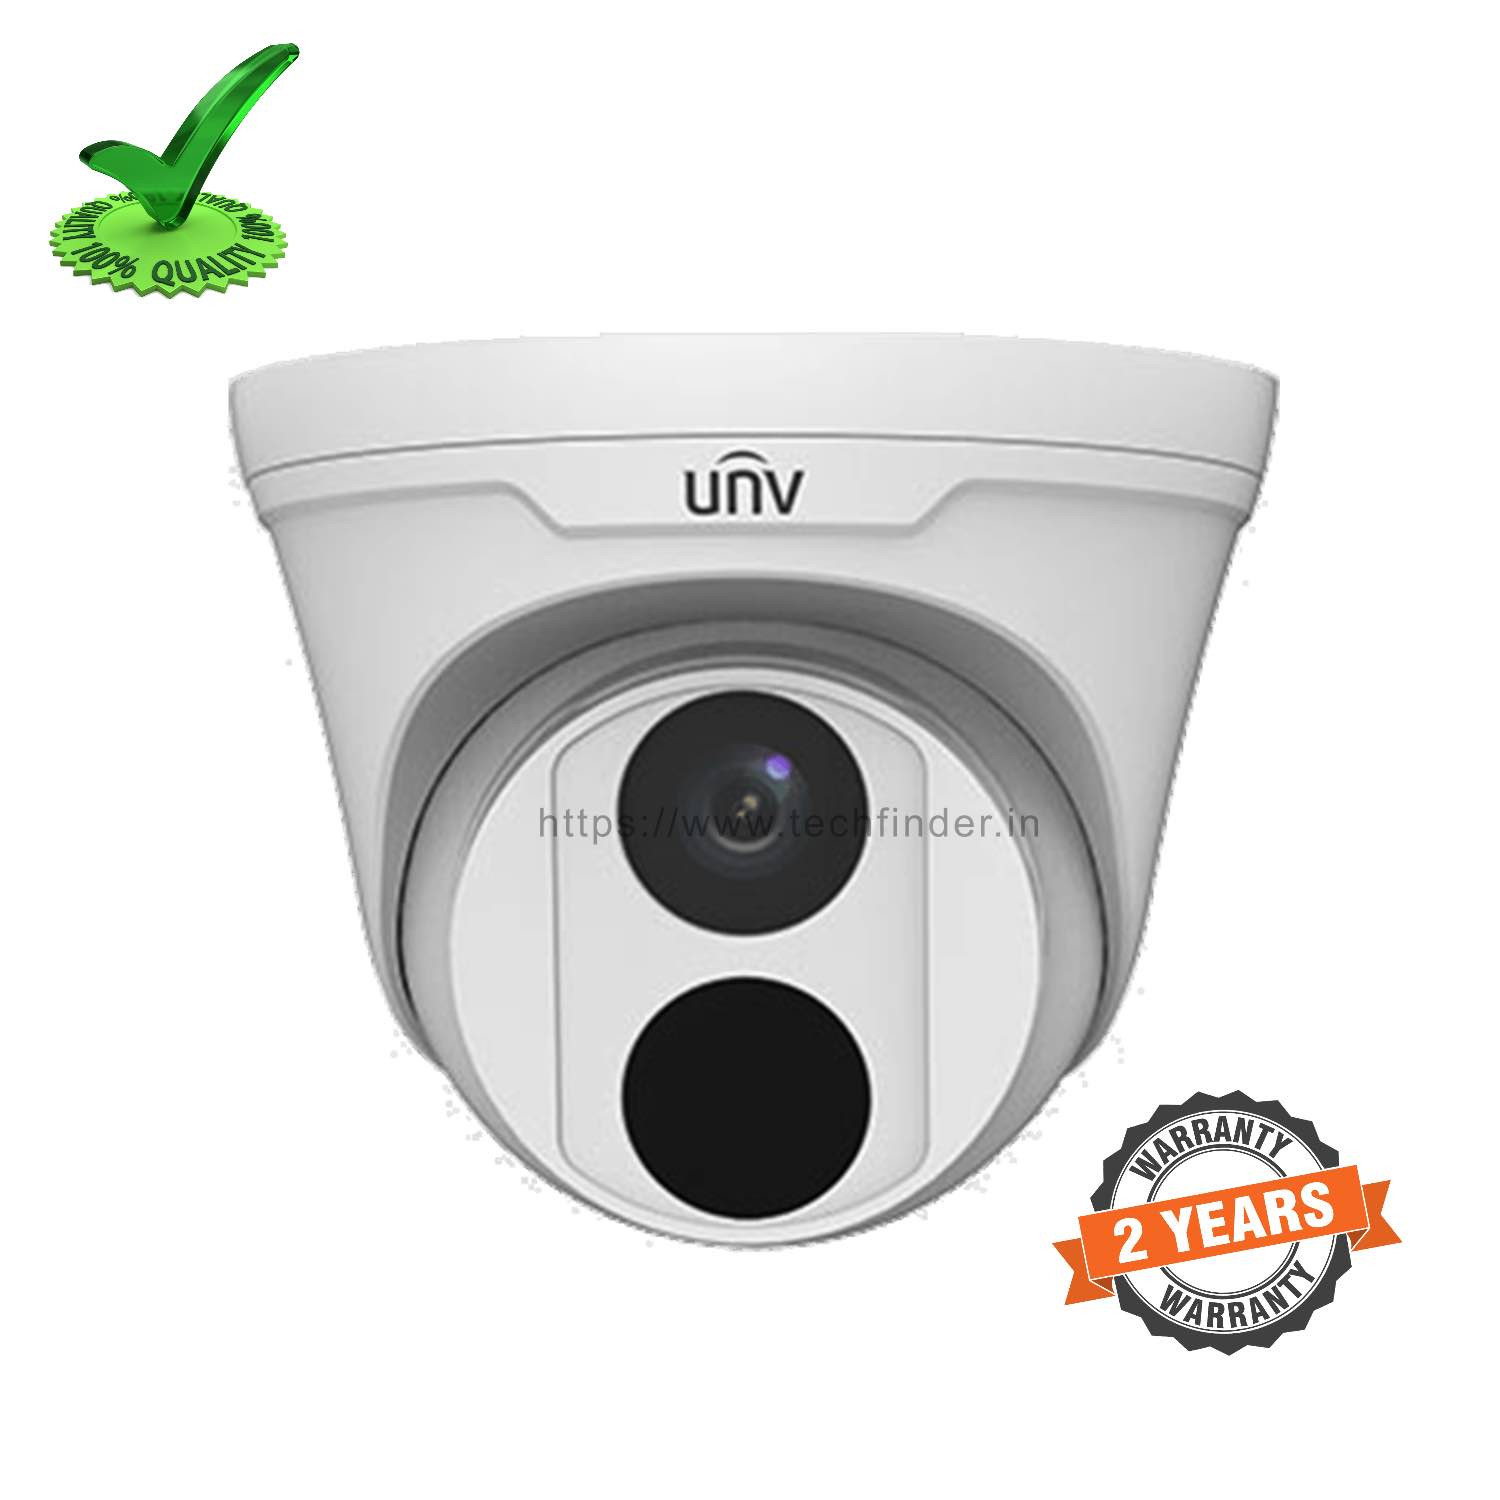 Uniview UNV IPC3612LR3-PF28-D 2mp HD Network Dome Camera